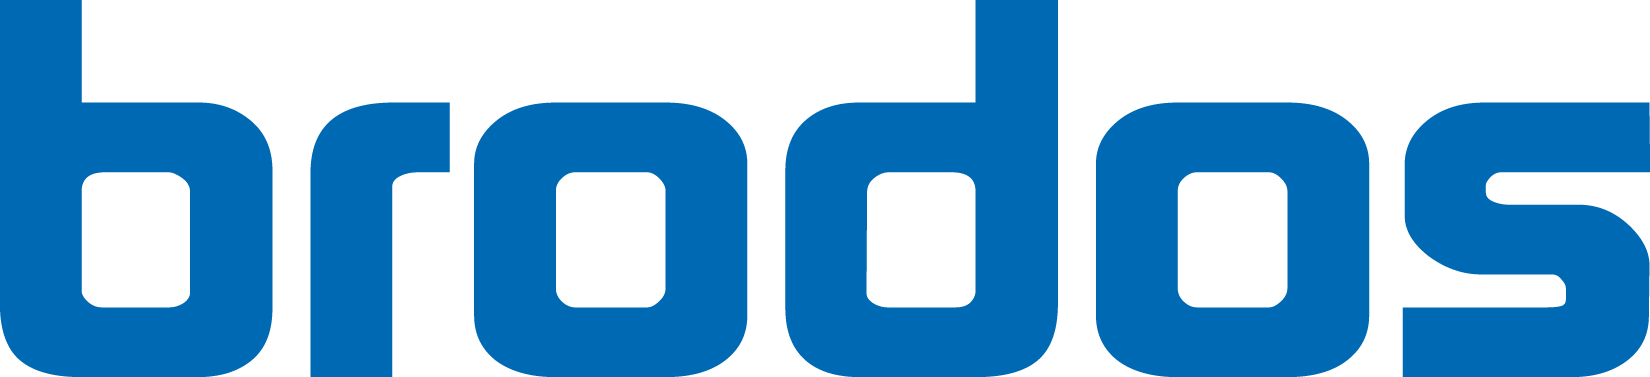 Brodos Logo